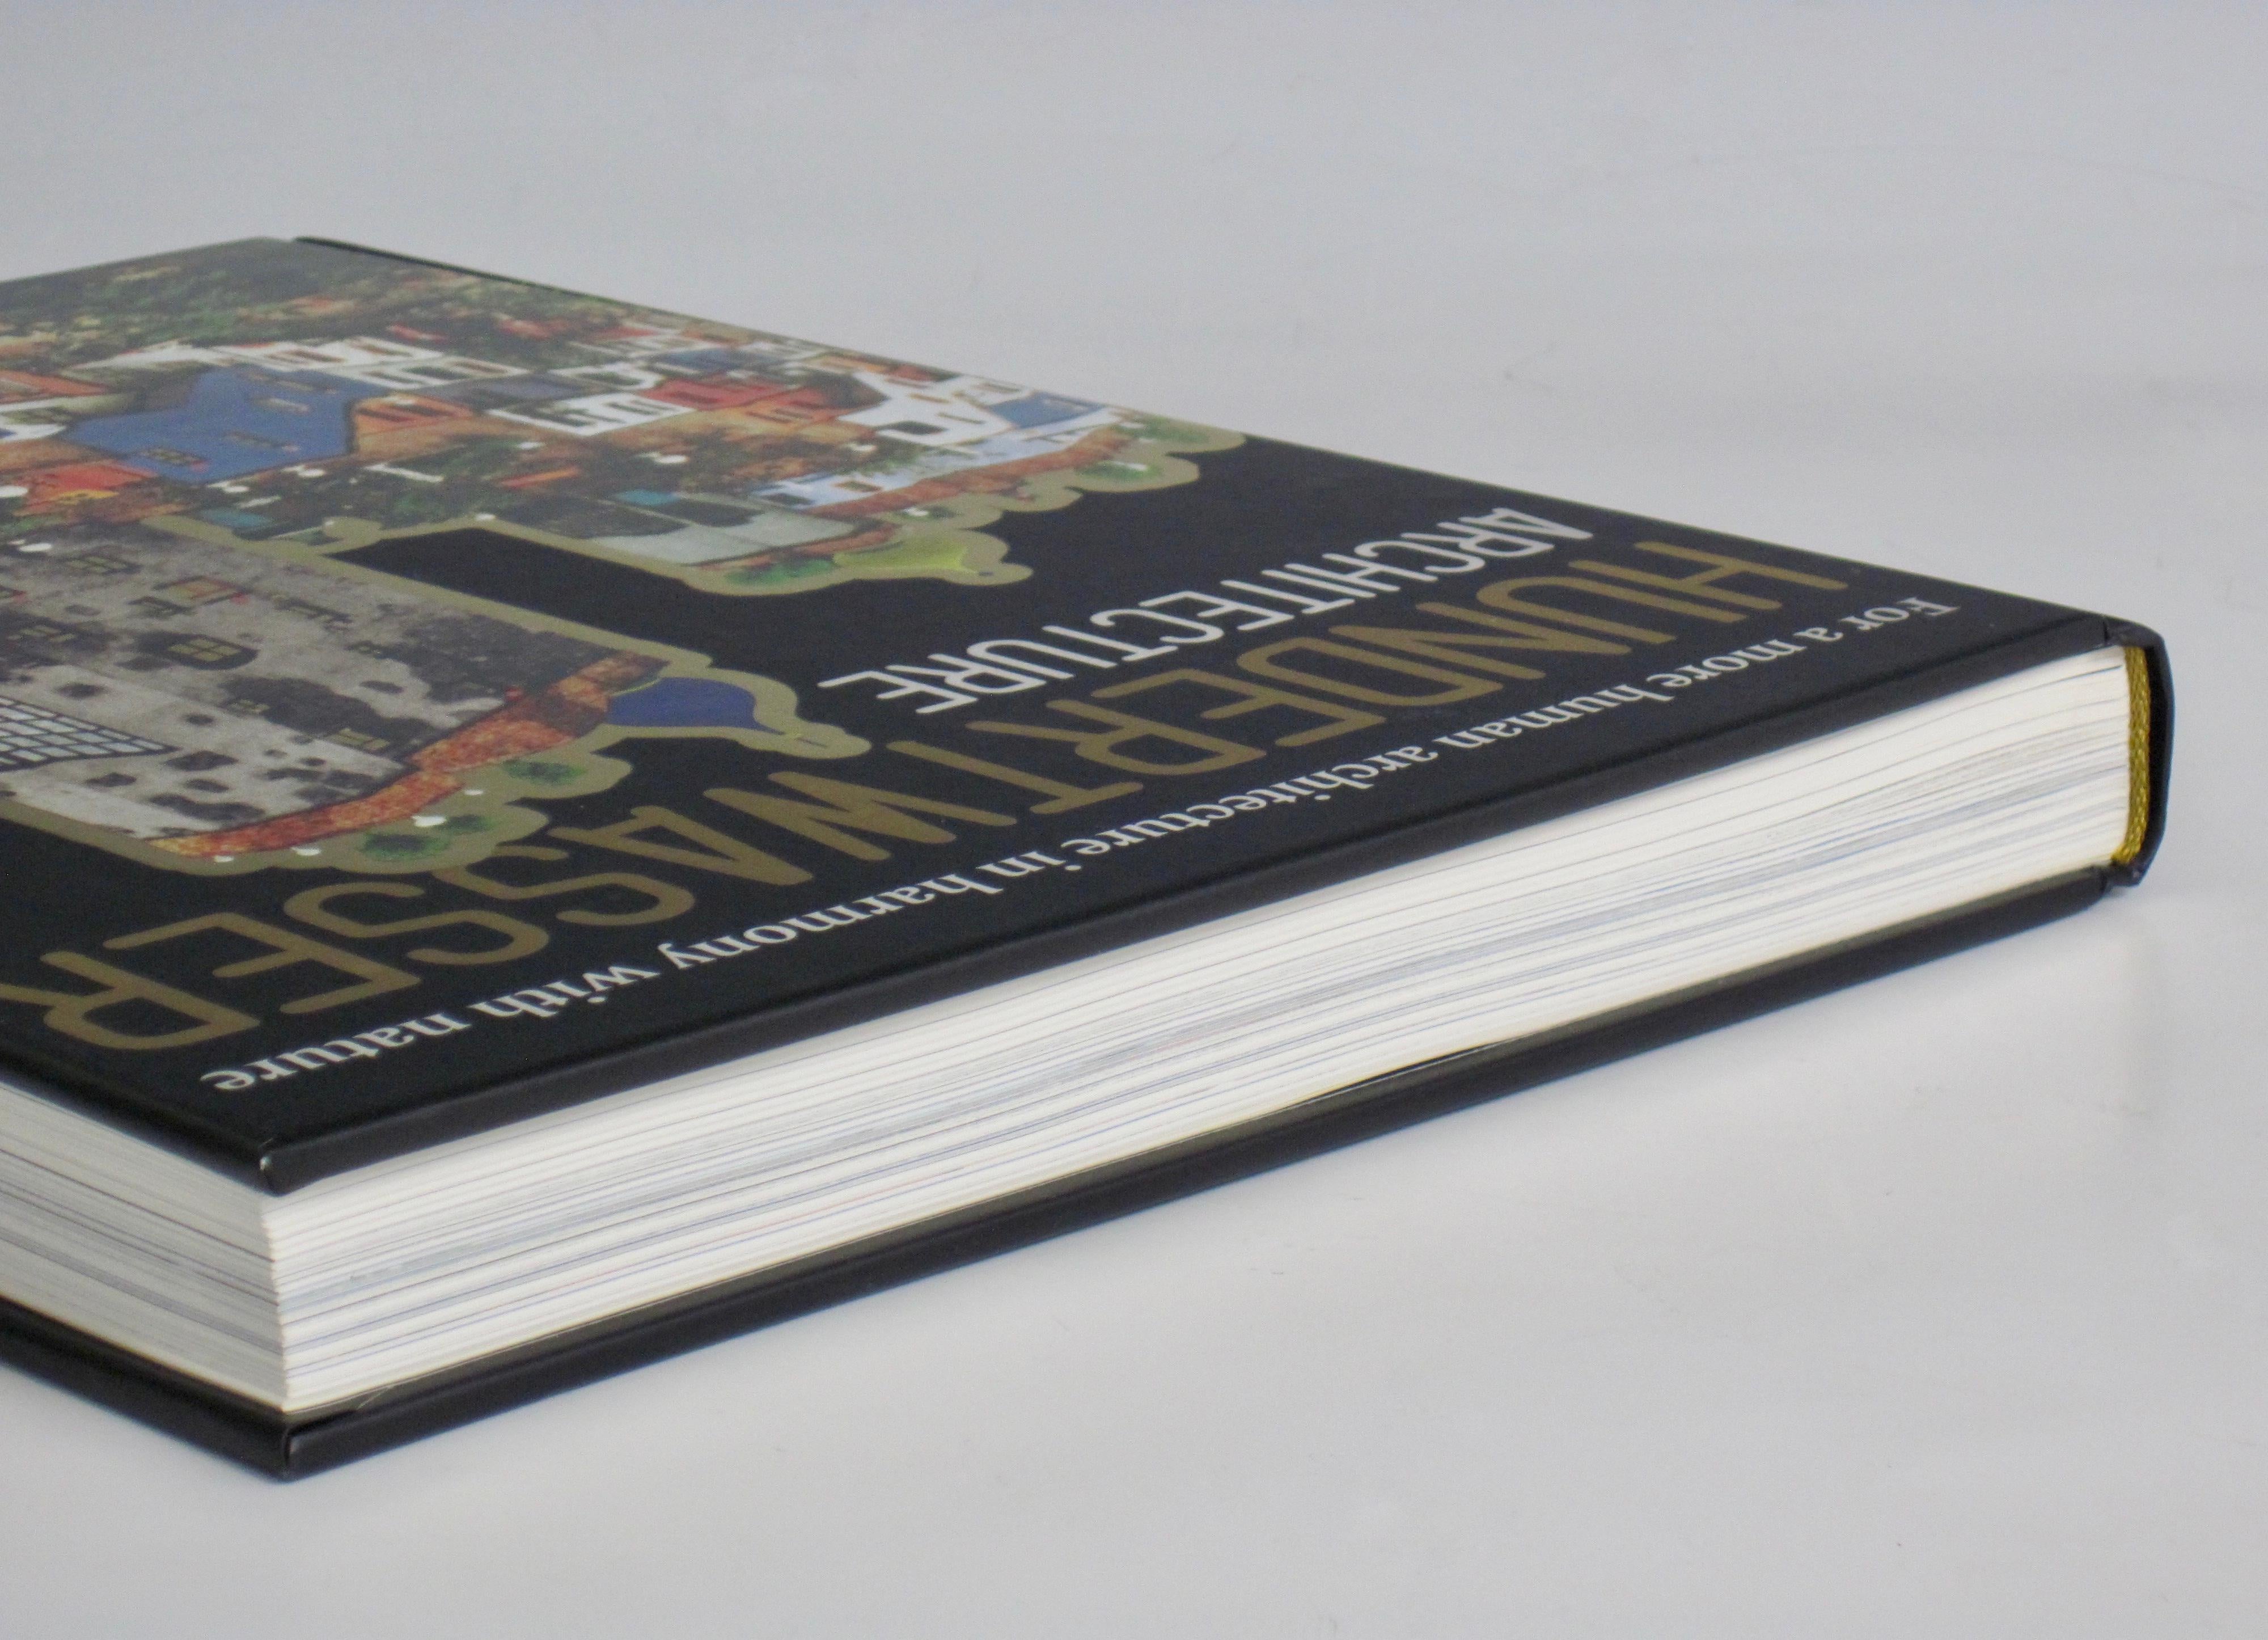 Taschen Hundertwasser Architecture Hardcover Coffee Table Book 5